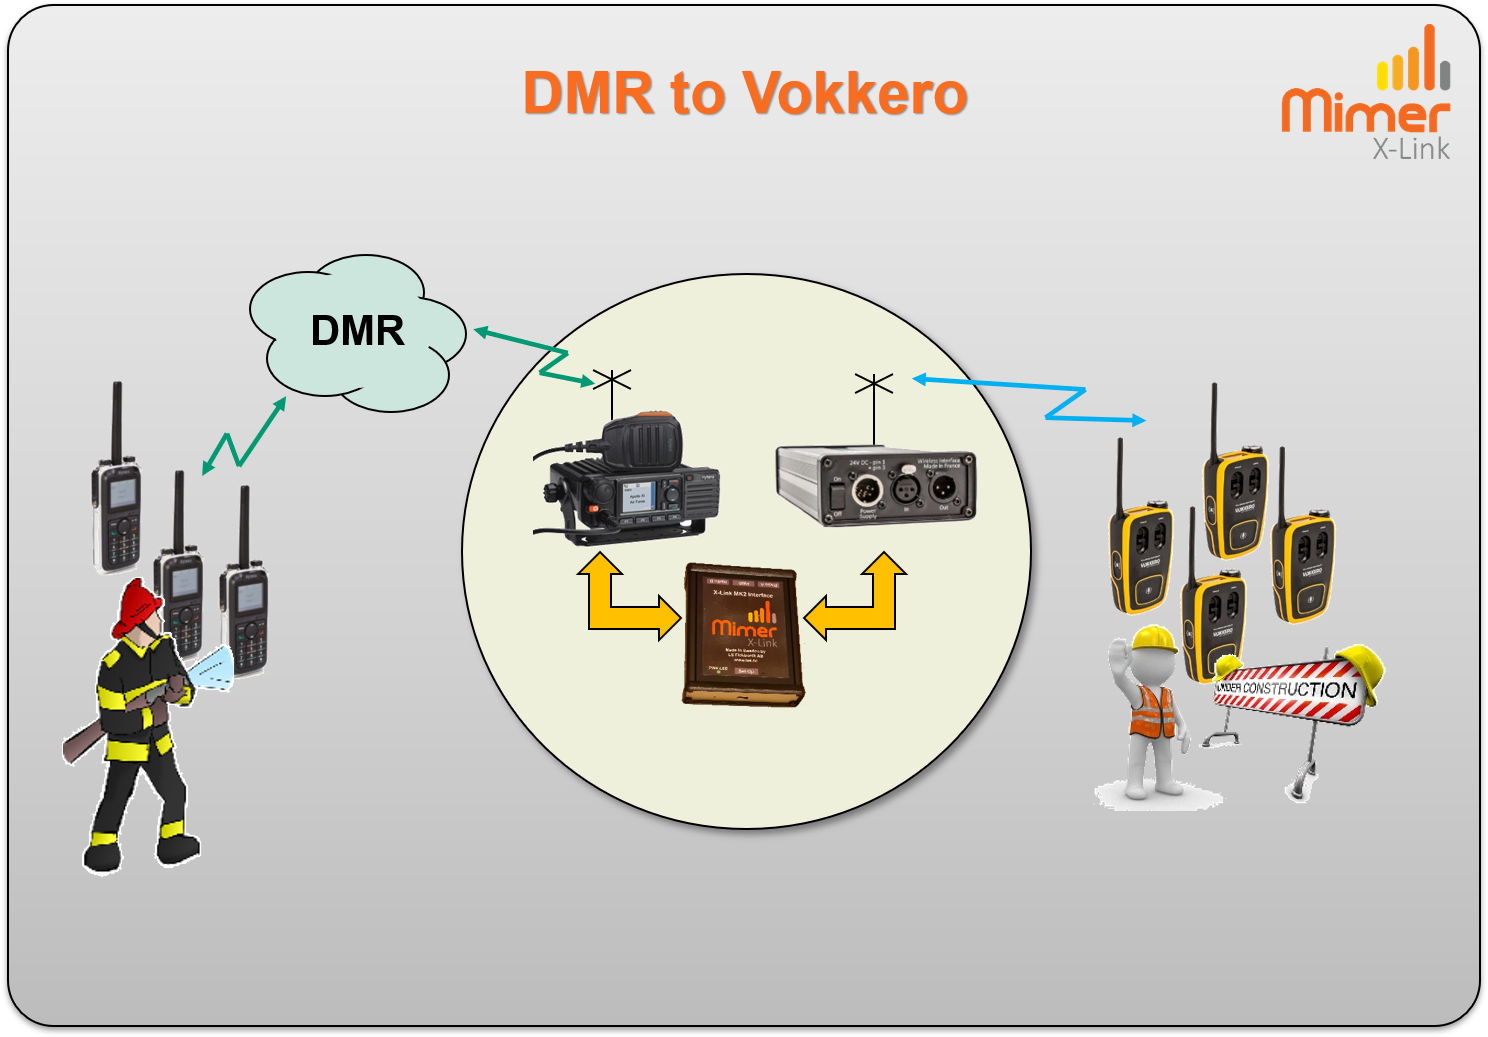 X-Link DMR to Vokkero